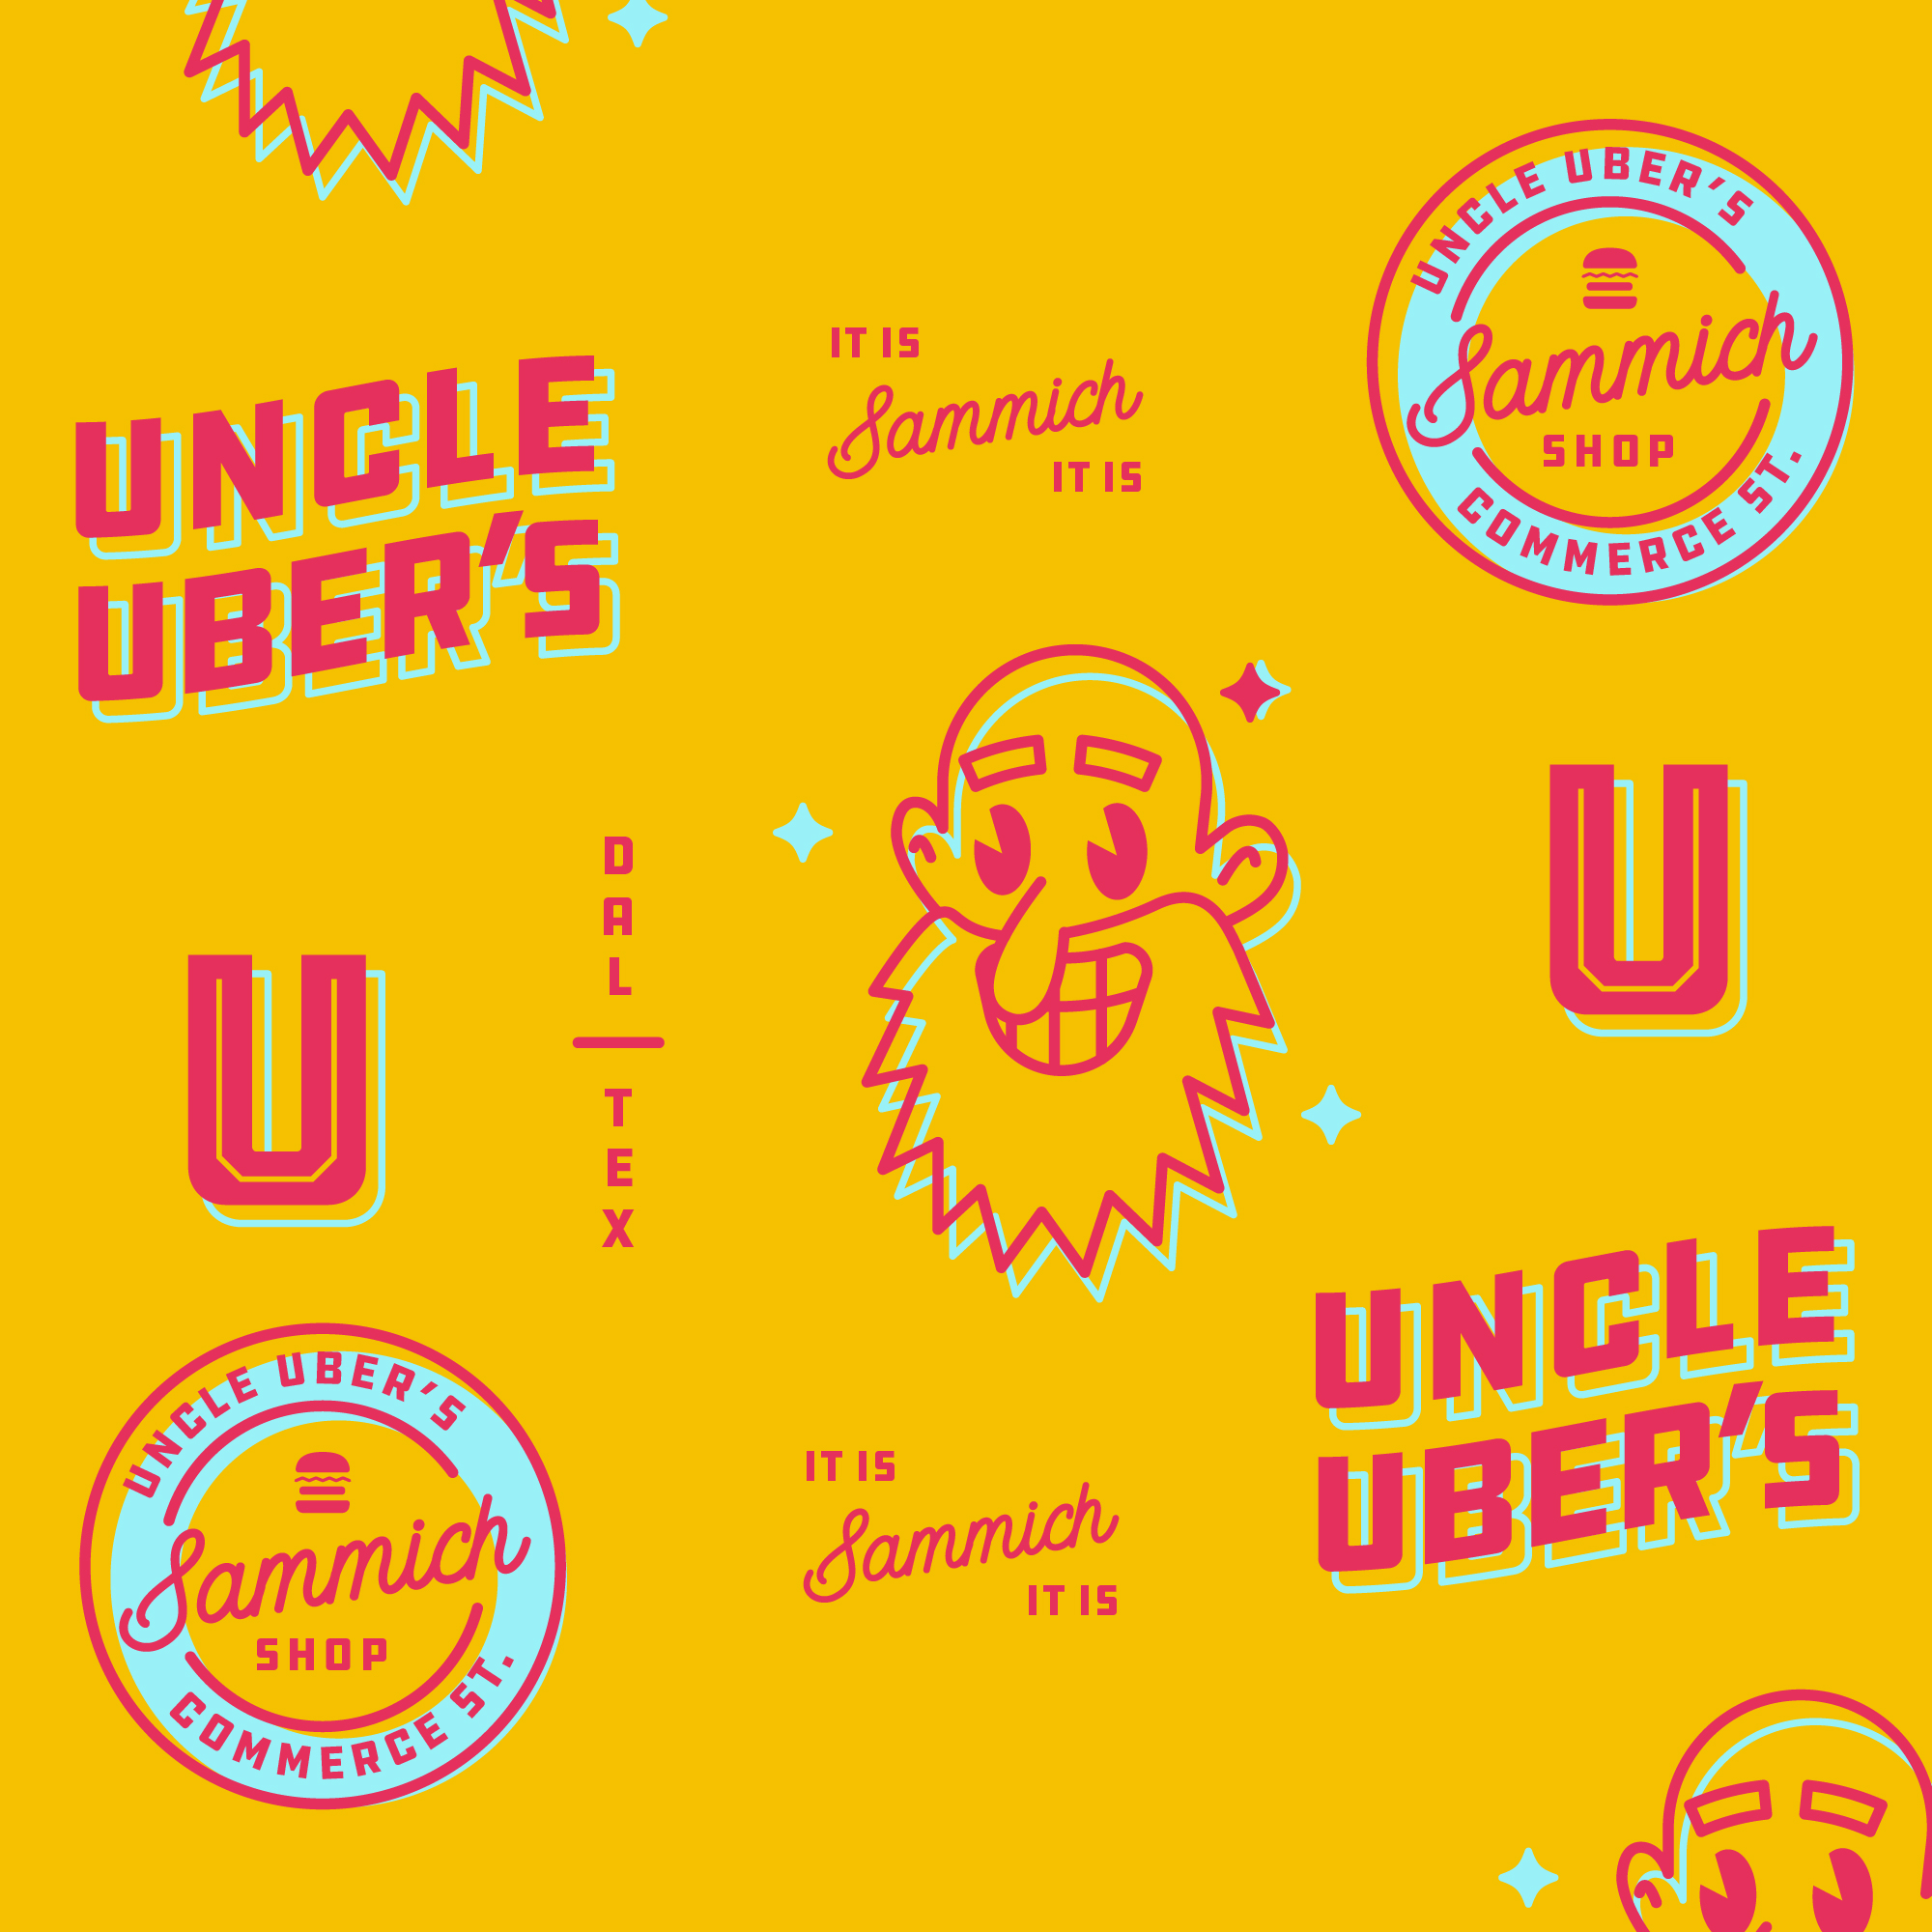 UncleUbers_IG_Badges-03